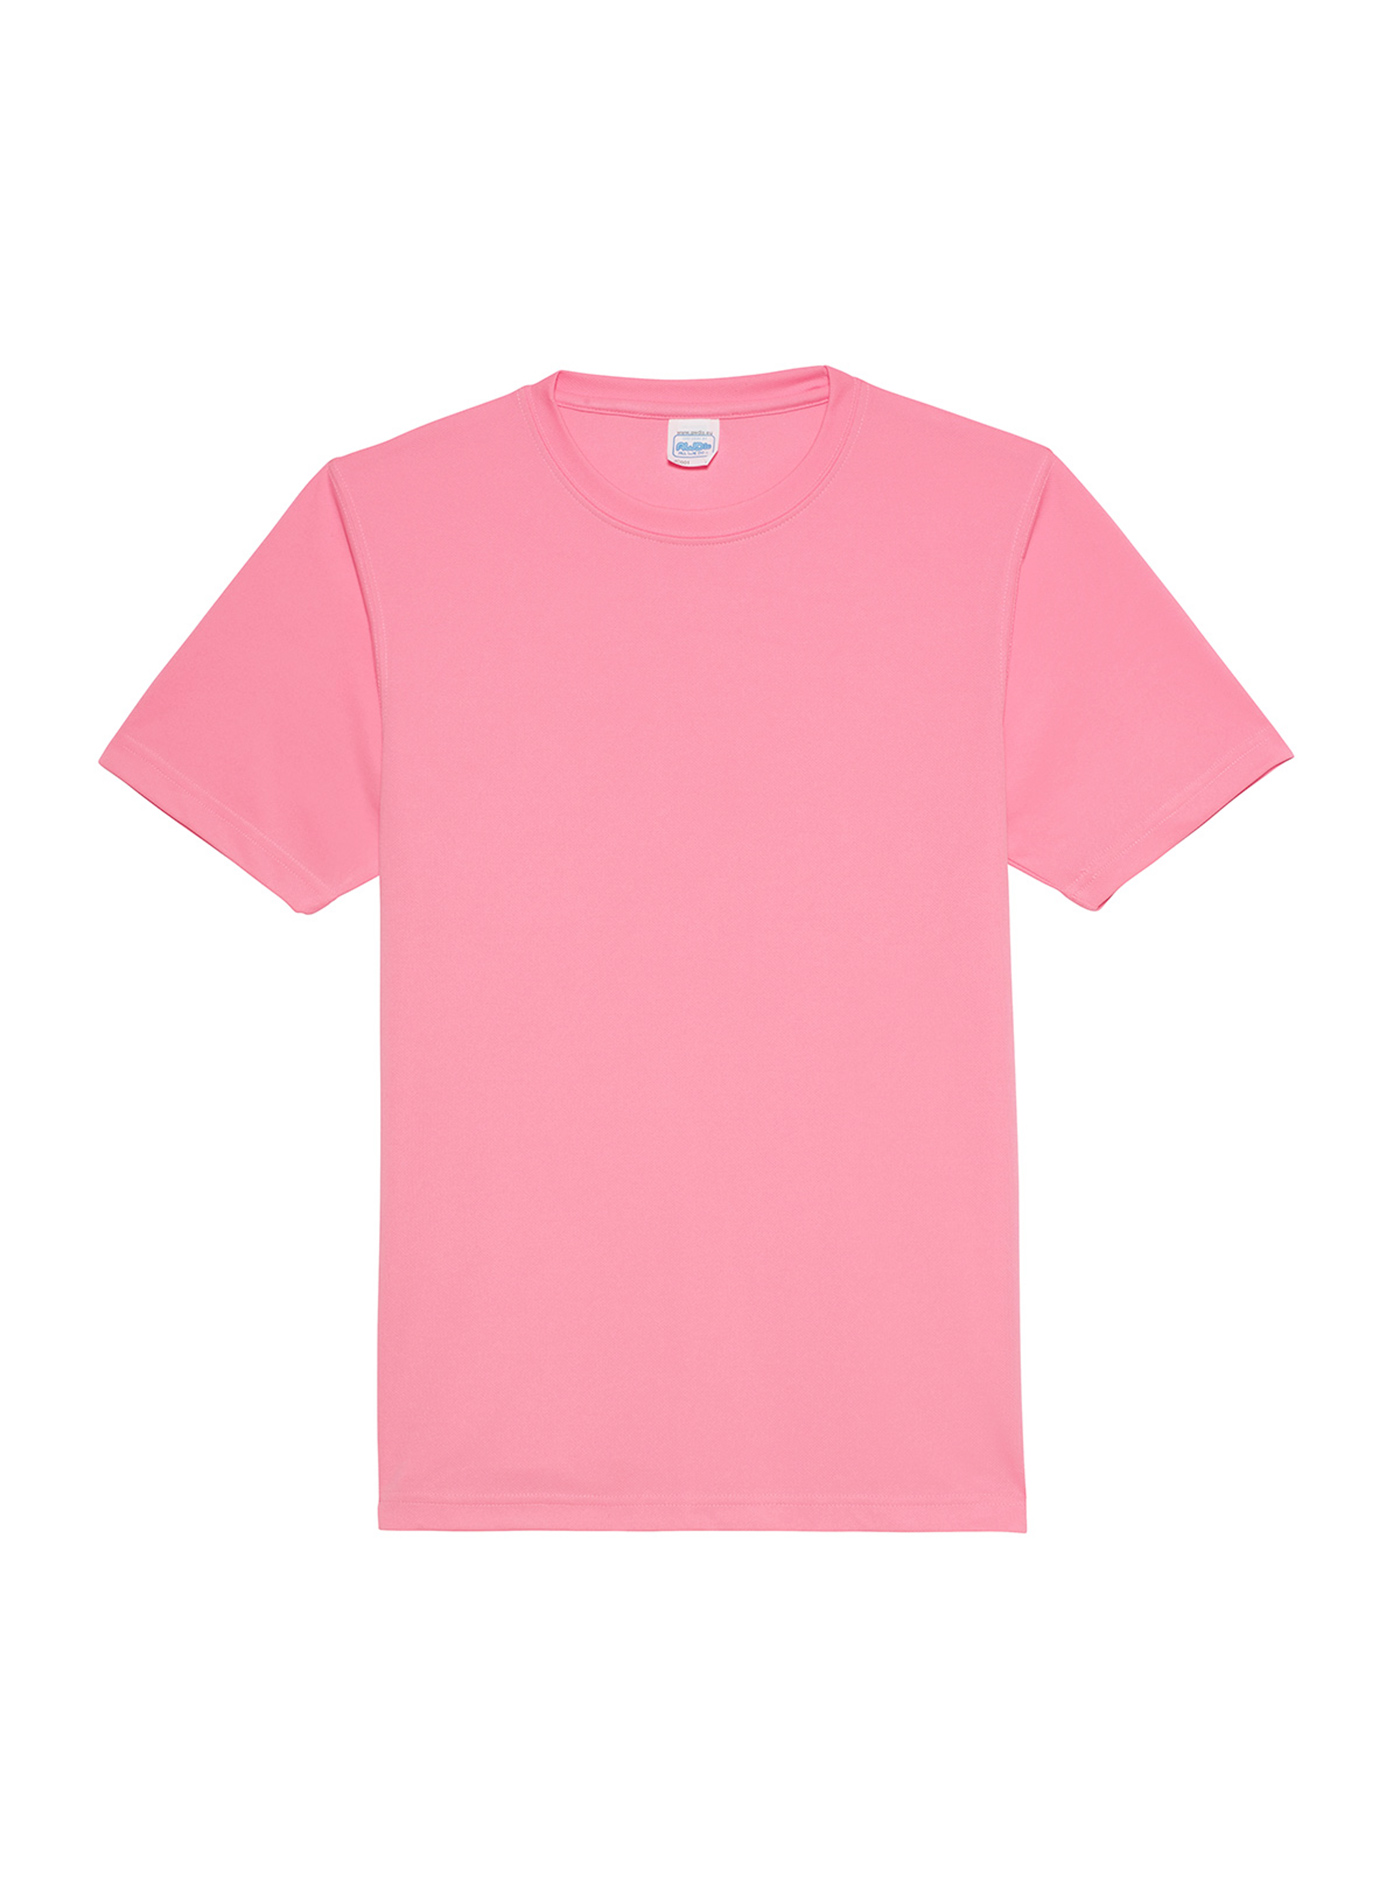 Unisex tričko Just Ts Neonlight - Neonově růžová XL